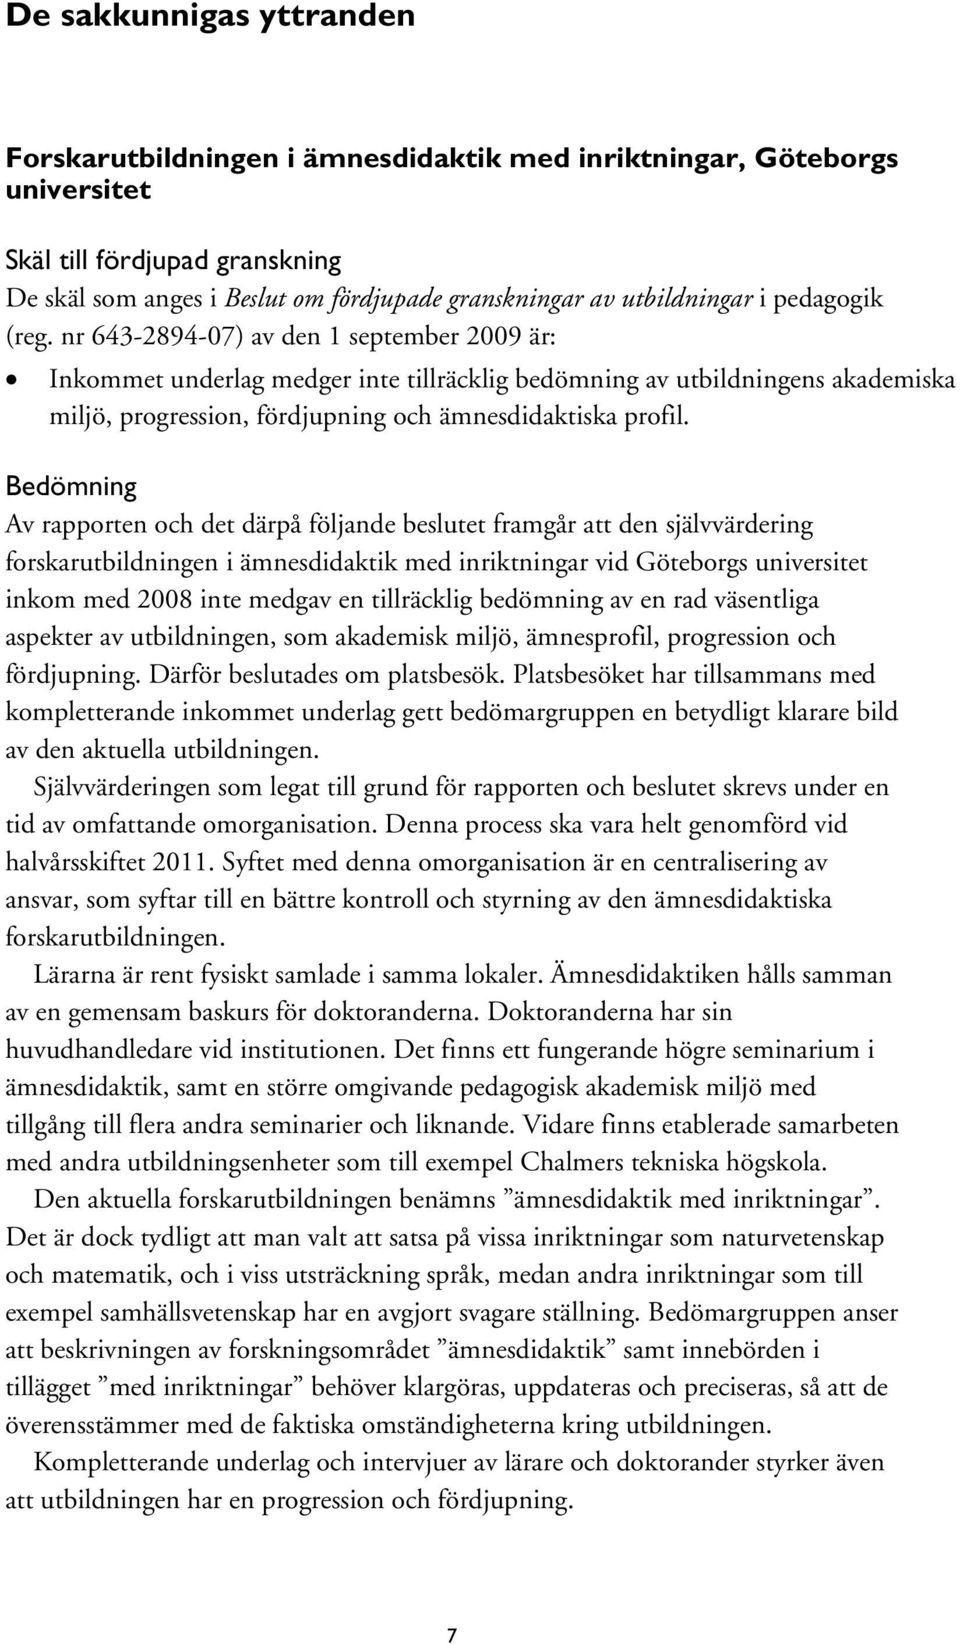 Av rapporten och det därpå följande beslutet framgår att den självvärdering forskarutbildningen i ämnesdidaktik med inriktningar vid Göteborgs universitet inkom med 2008 inte medgav en tillräcklig